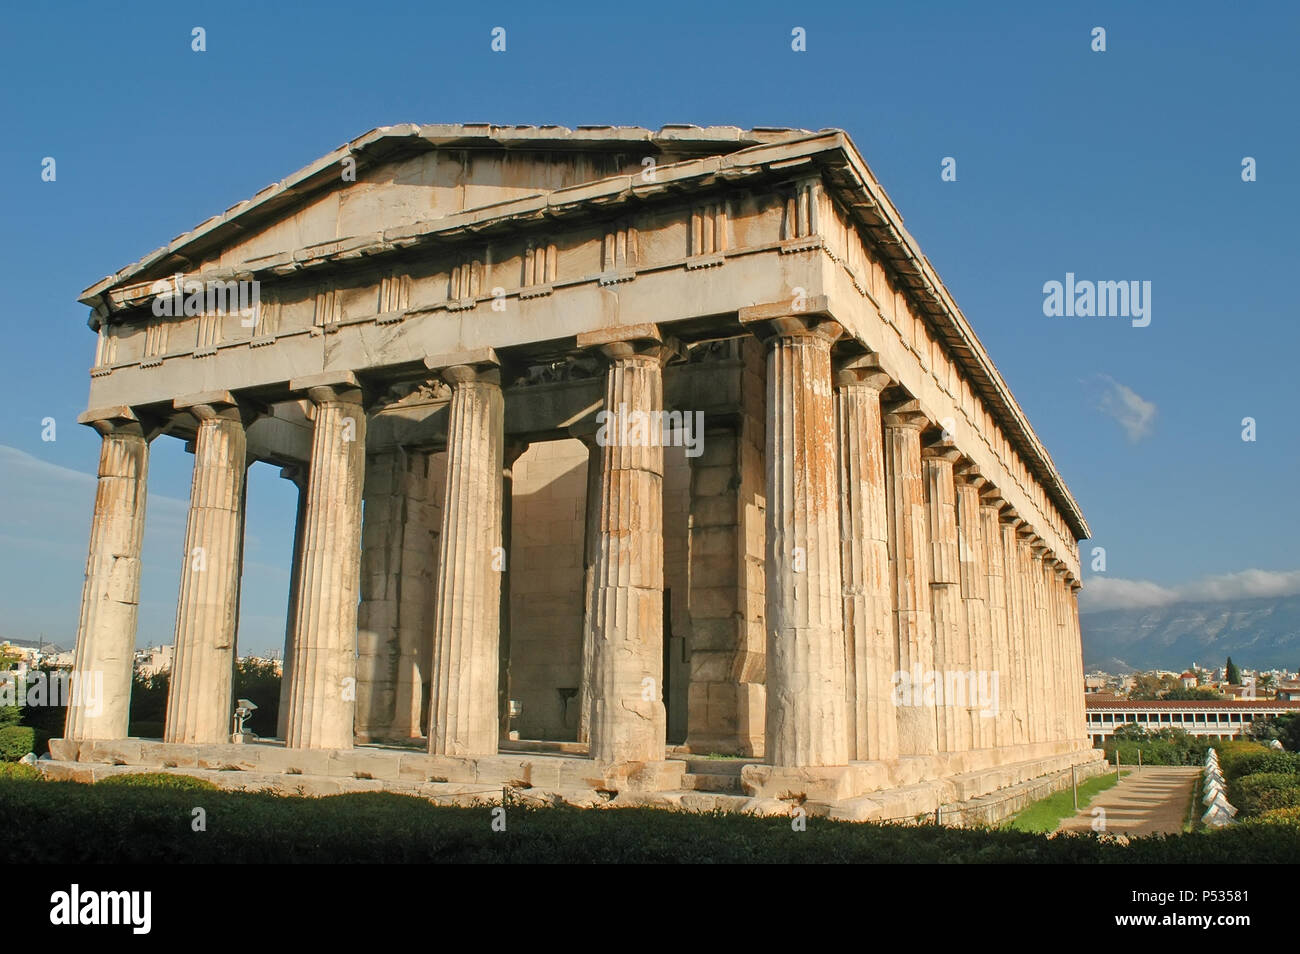 Parthenon on the Acropolis of Athens, Greece. Stock Photo